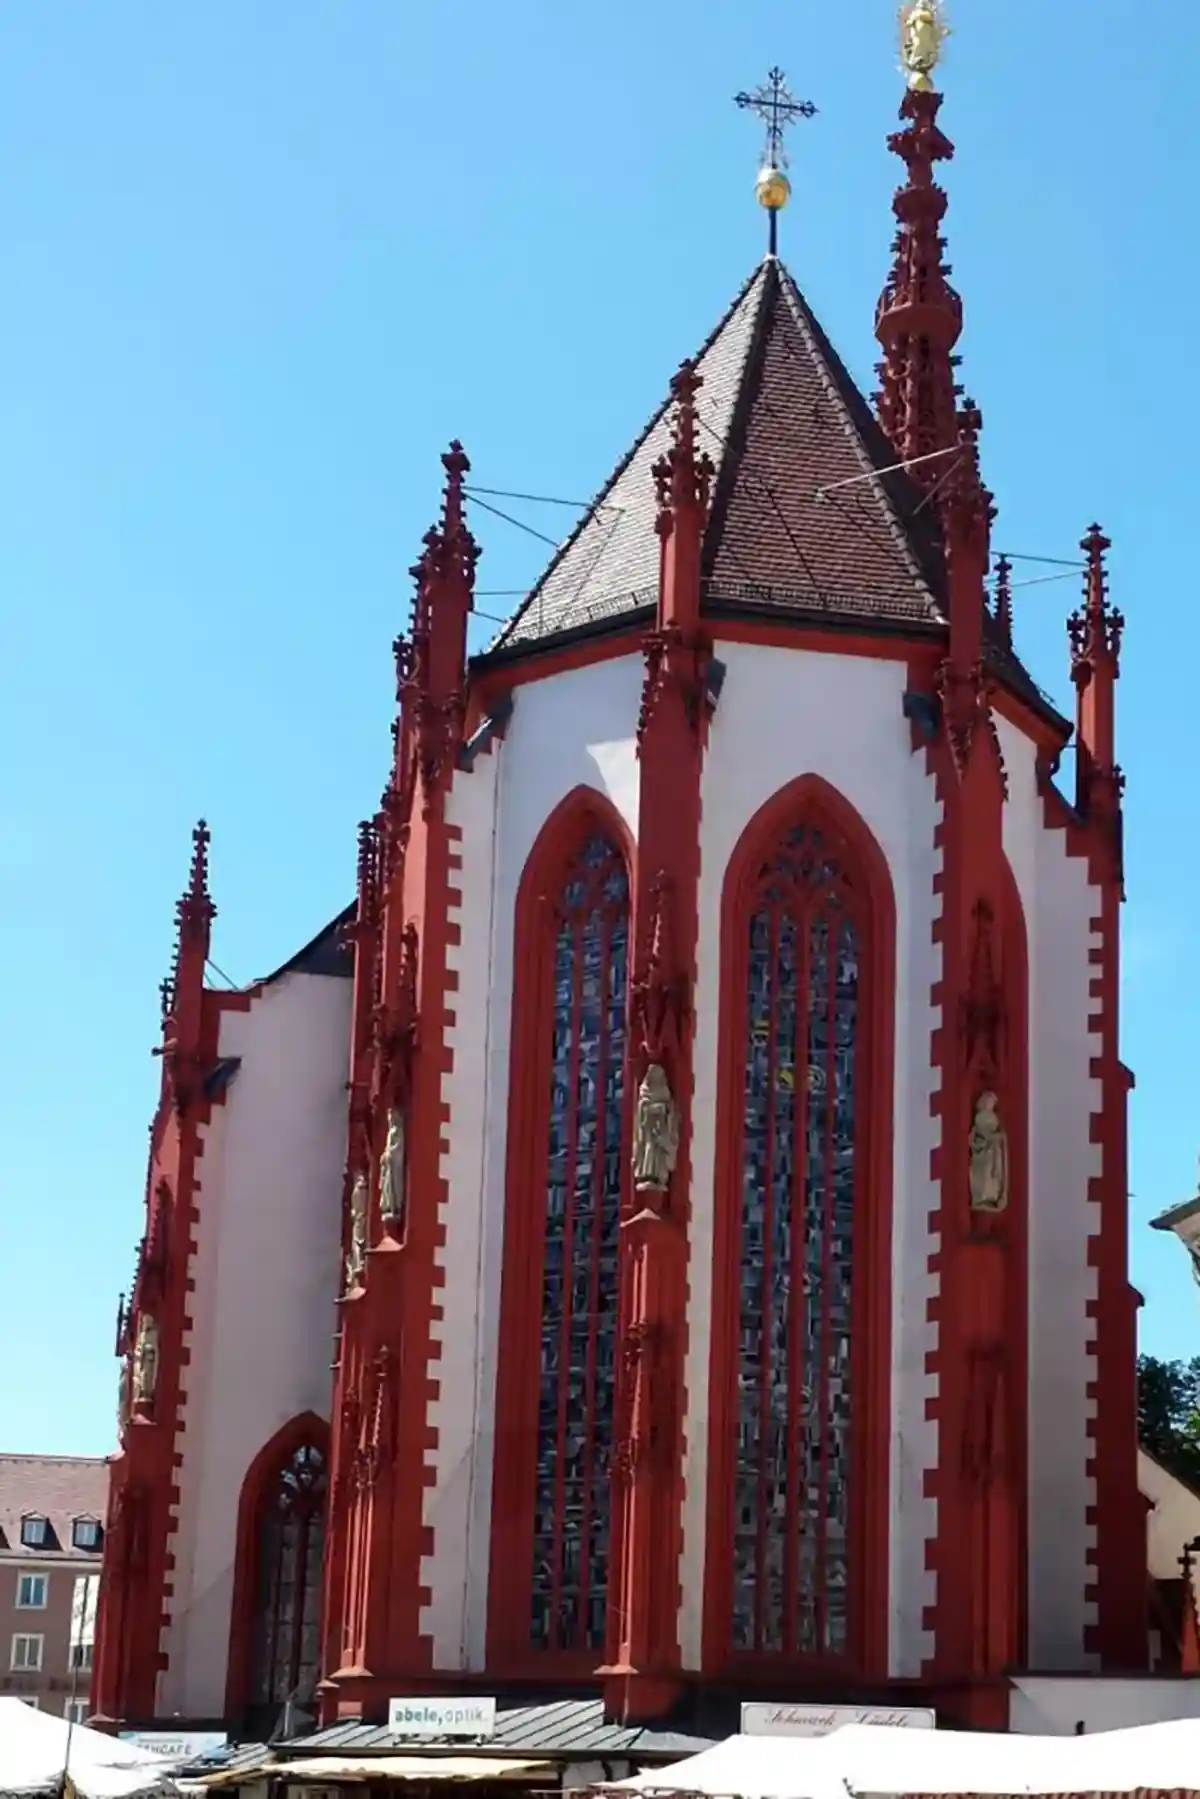 Здание выполнено в красно-белых тонах, особенно хороша высокая одиночная колокольня. Фото Wikimedia